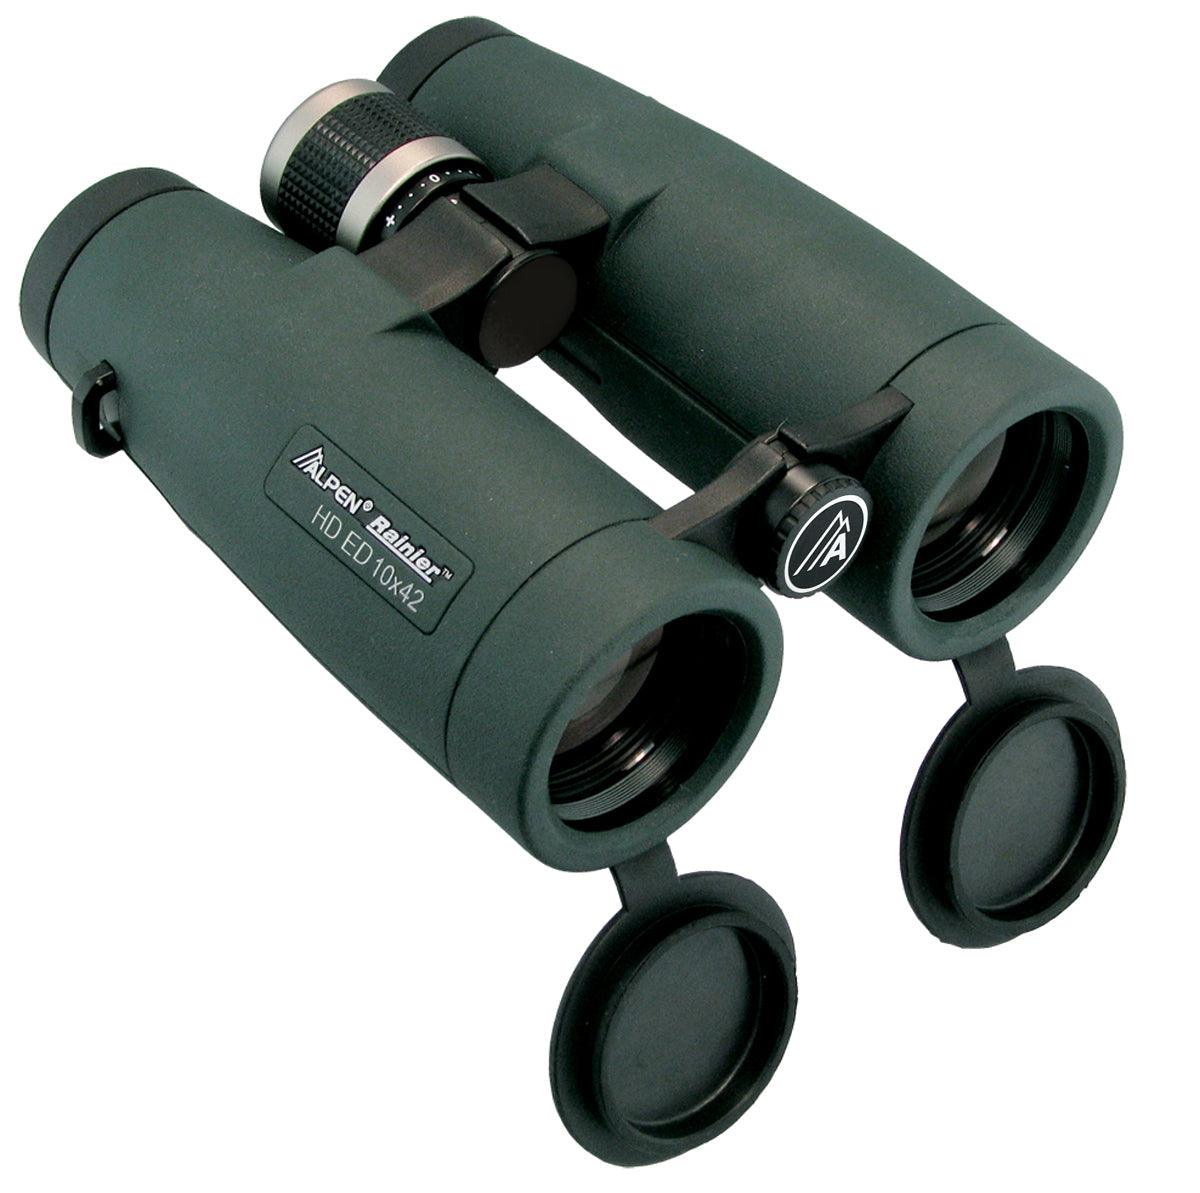 Alpen Rainier 10x42 ED HD Binoculars - Silverlight Optics